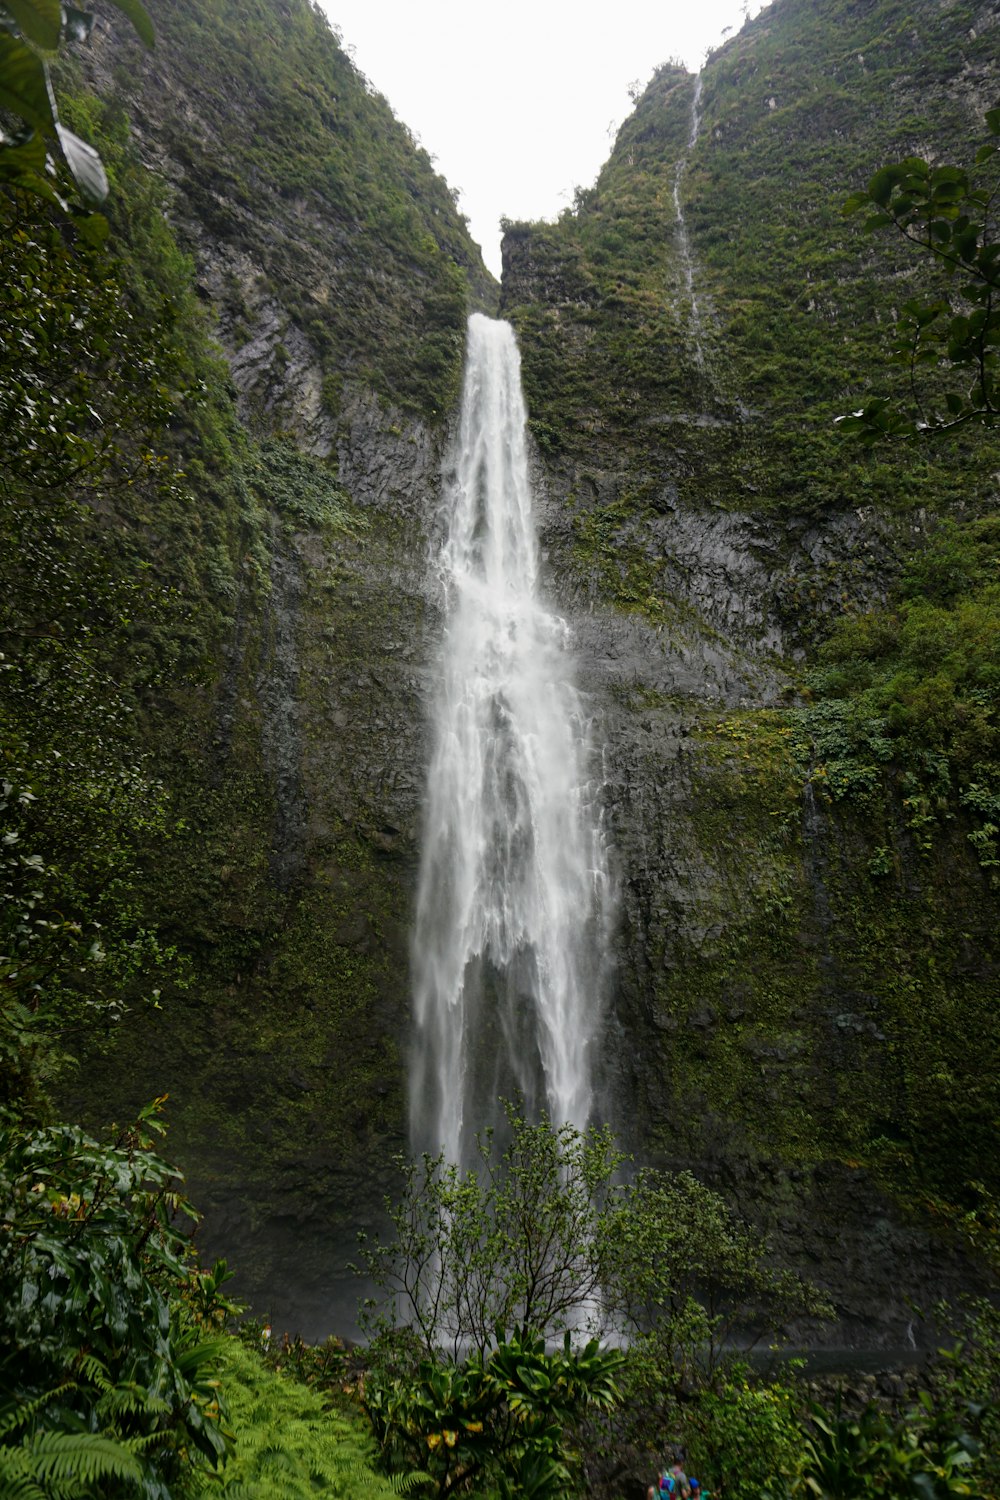 una grande cascata nel mezzo di una foresta verde e lussureggiante